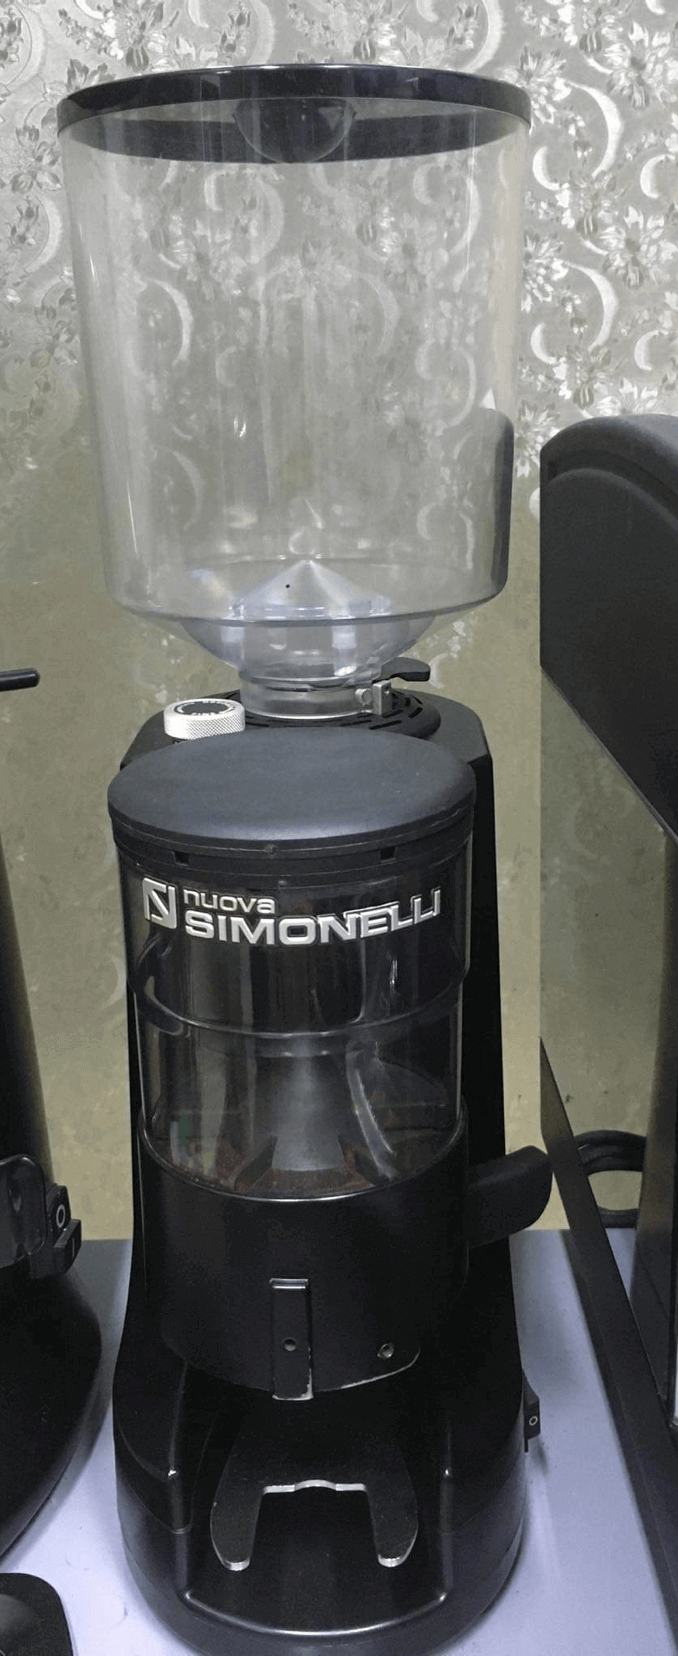 Thanh lý máy xay cà phê Nuova Simonelli MDX đã qua sử dụng : Máy còn mới 90% là dòng máy xay cà phê với công suất lớn được sản xuất bởi thương hiệu nổi tiếng Nuova Simonelli của Ý có thiết kế đơn giản giúp vận hành một cách dễ dàng hơn.